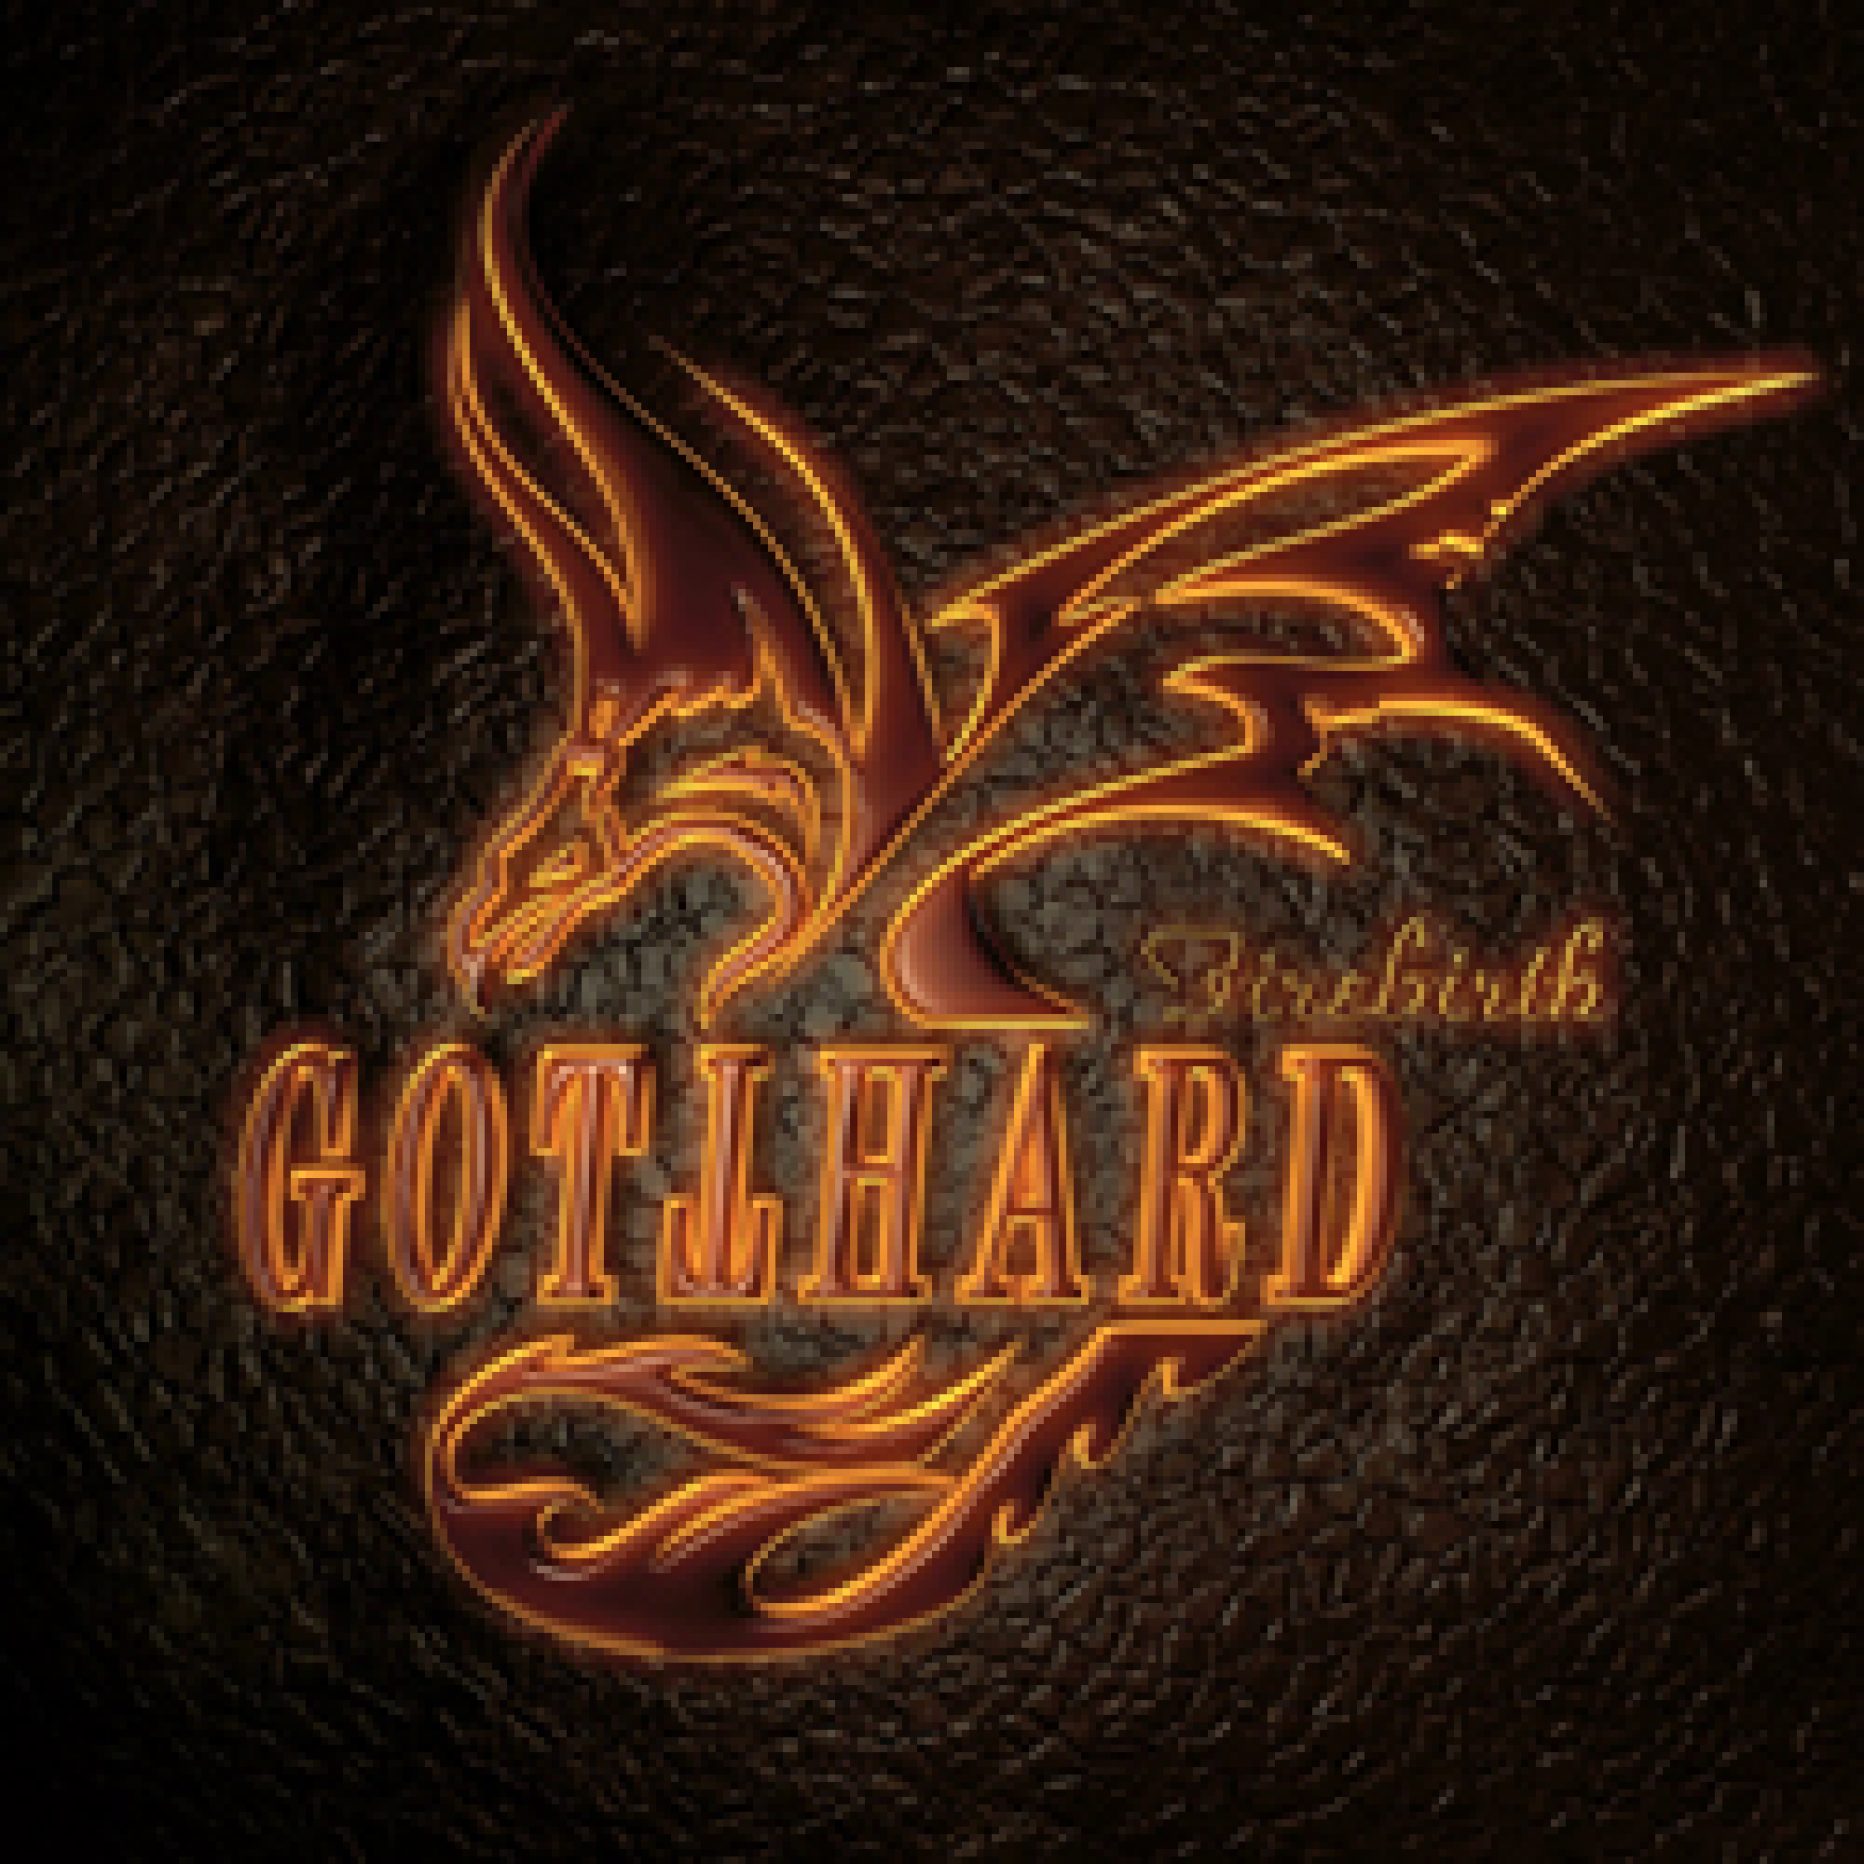 Gotthard – Firebirth